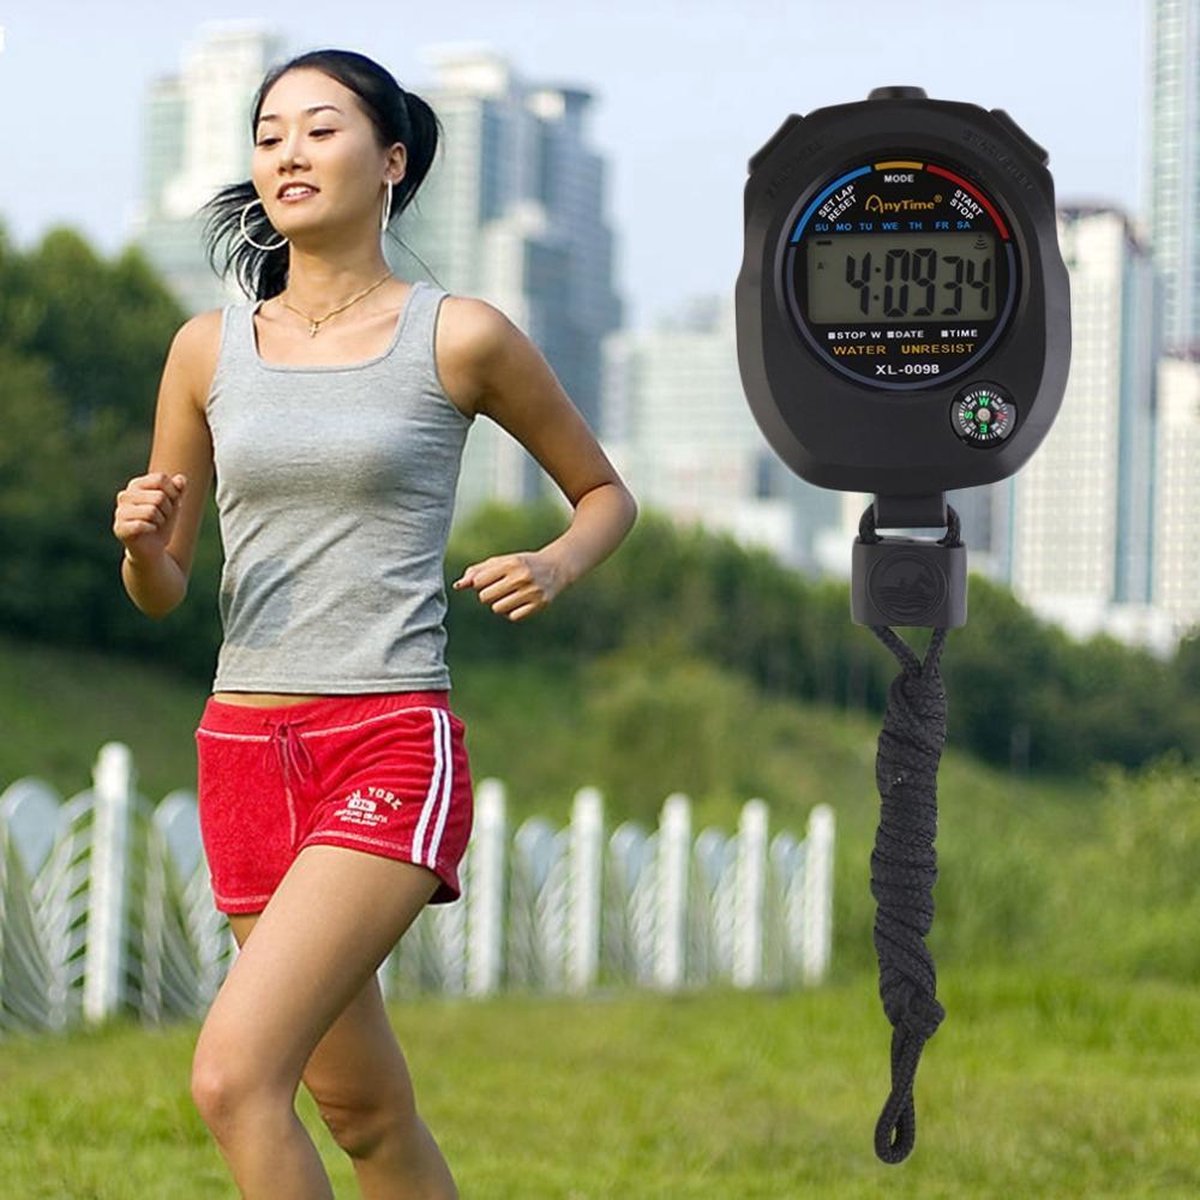 Digitale Stopwatch Timer Met  Alarm Functie & Ingebouwd Kompas - Merkloos